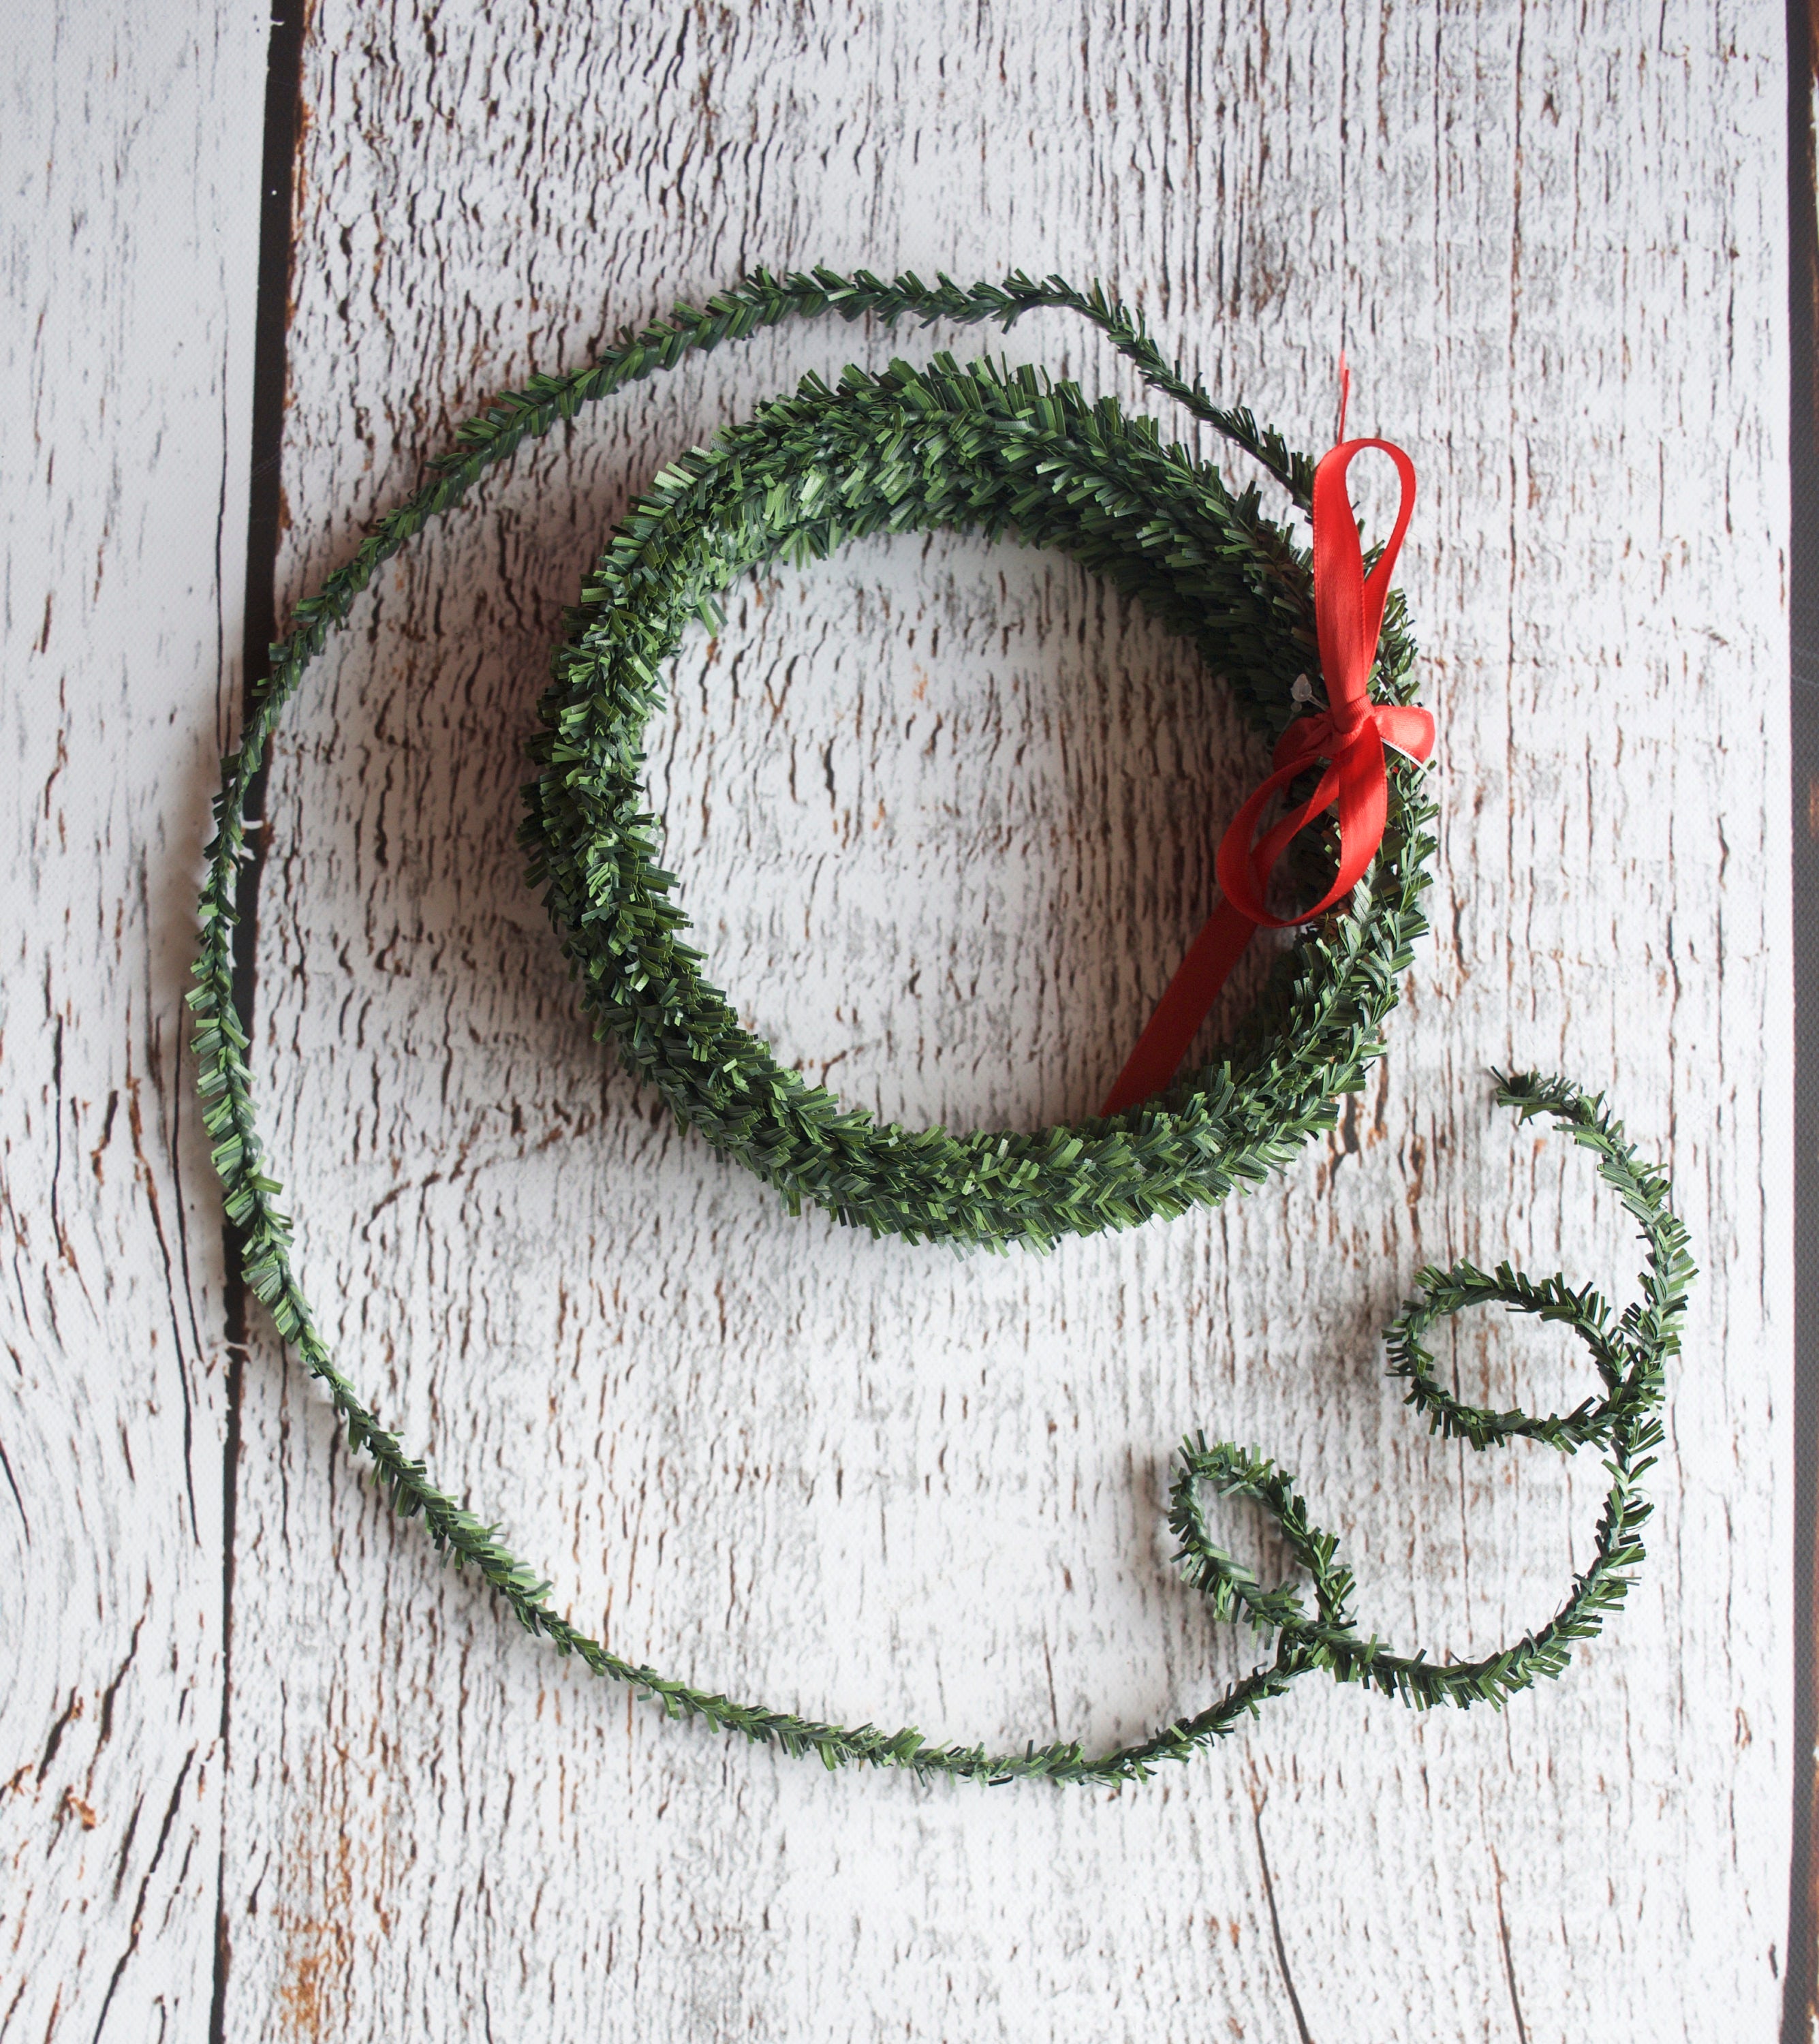 32.8 Yard Silver Leaf Ribbon Fabric Leaf Ribbon Trim Rope for DIY Crafts, Wreath